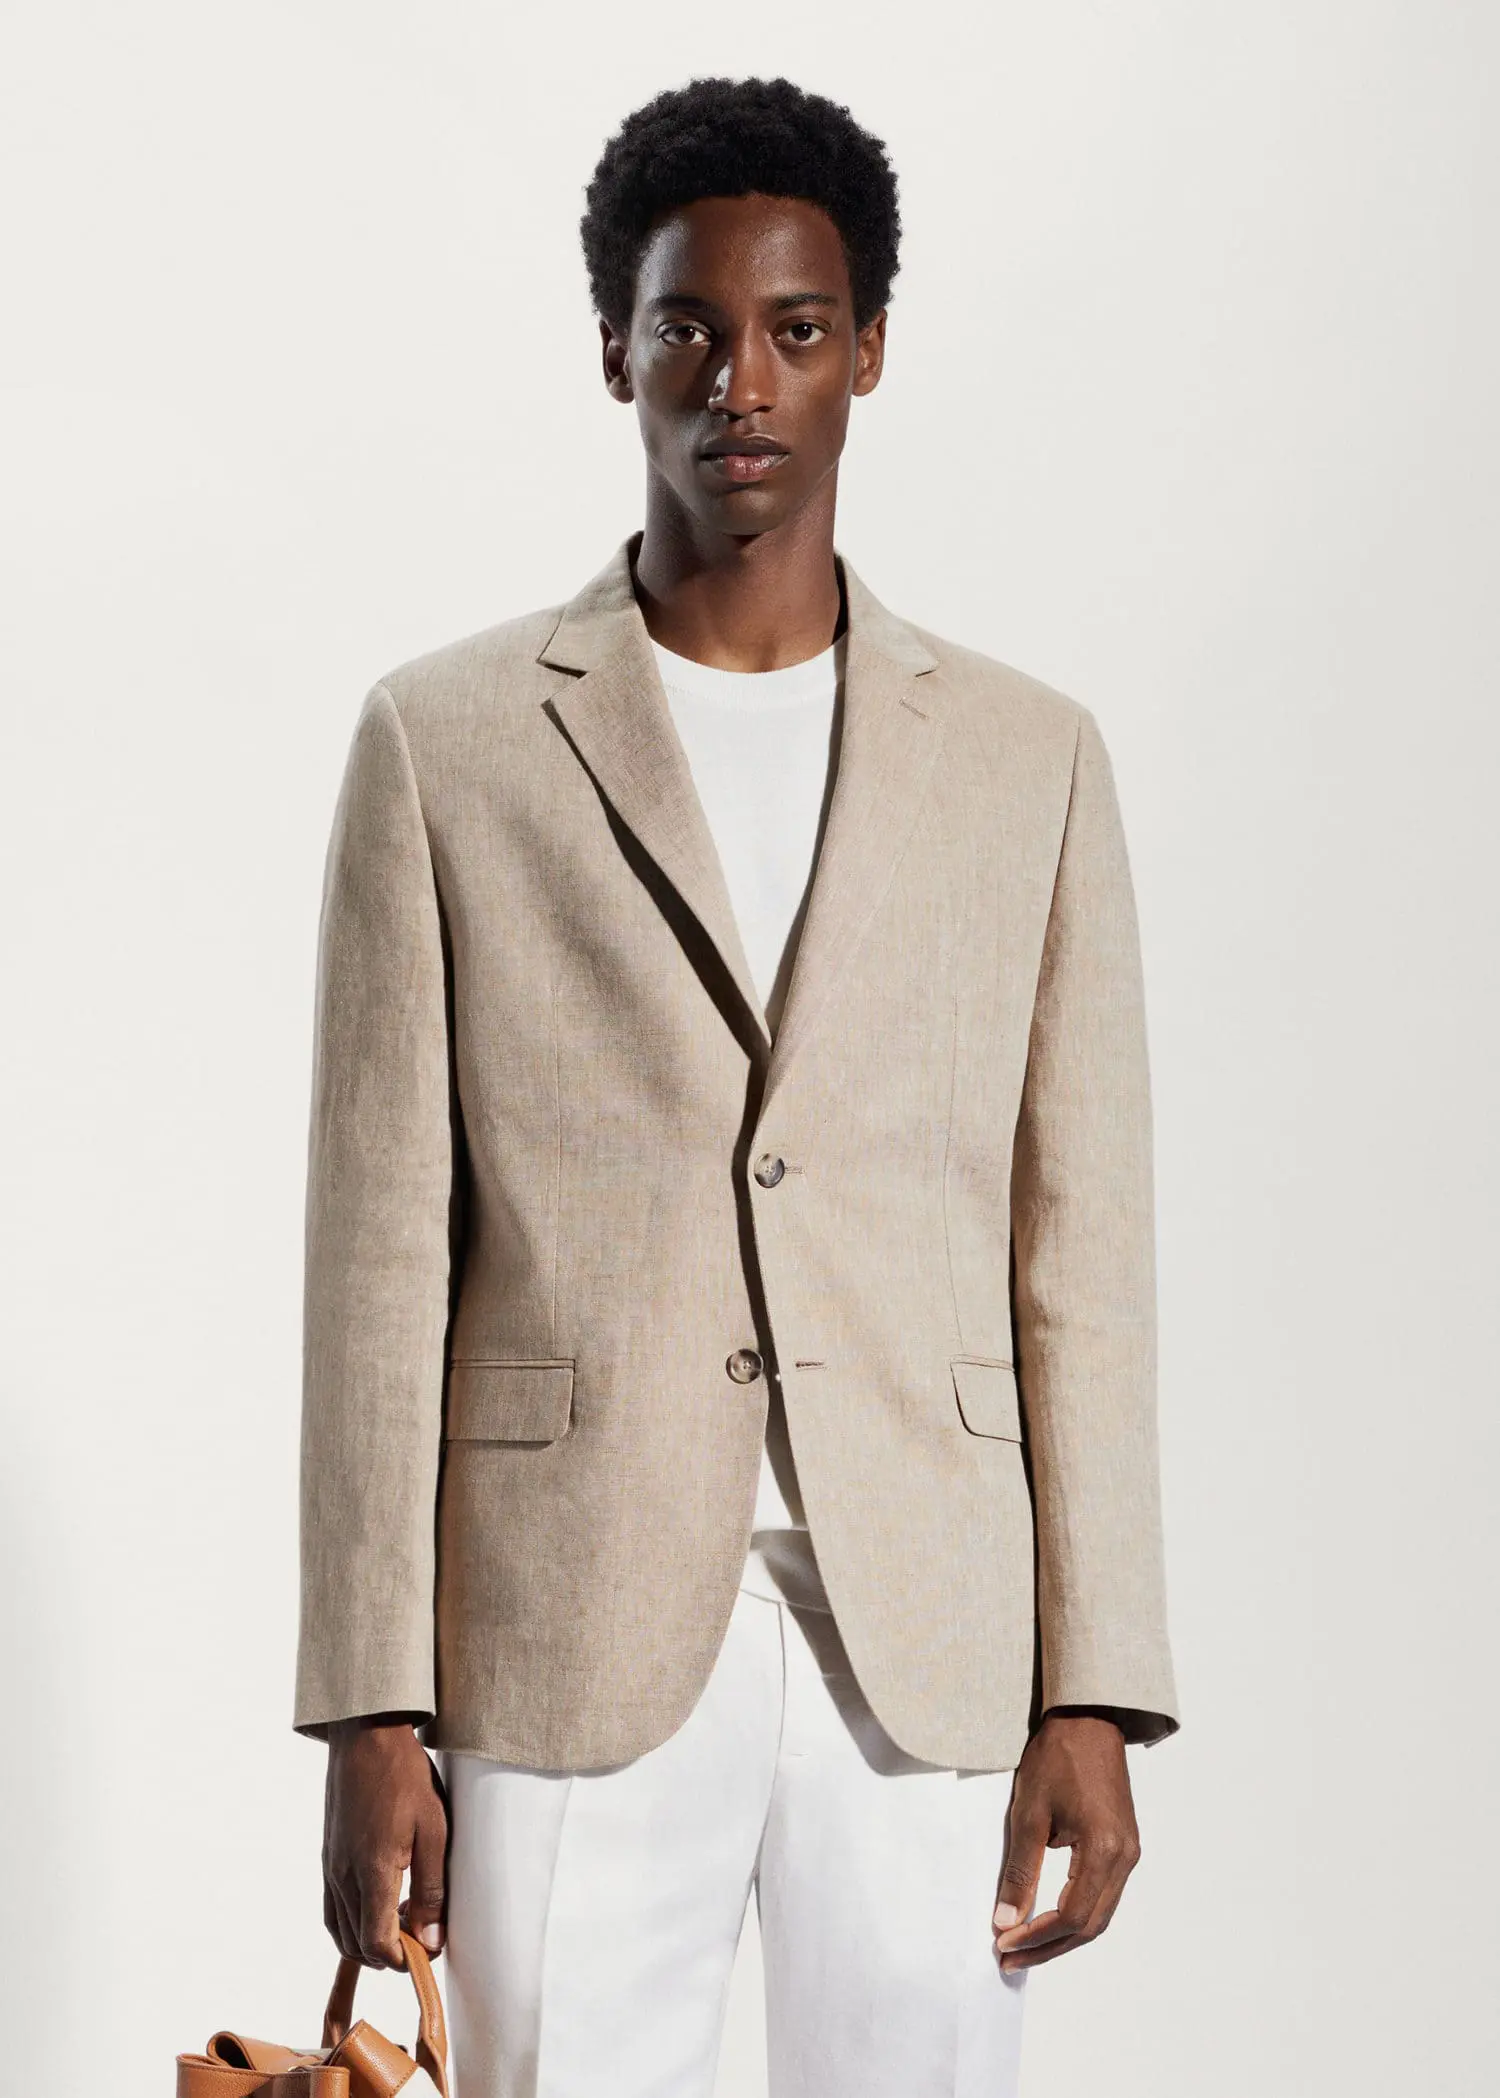 Mango 100% linen slim fit blazer. a man wearing a tan jacket and white pants. 